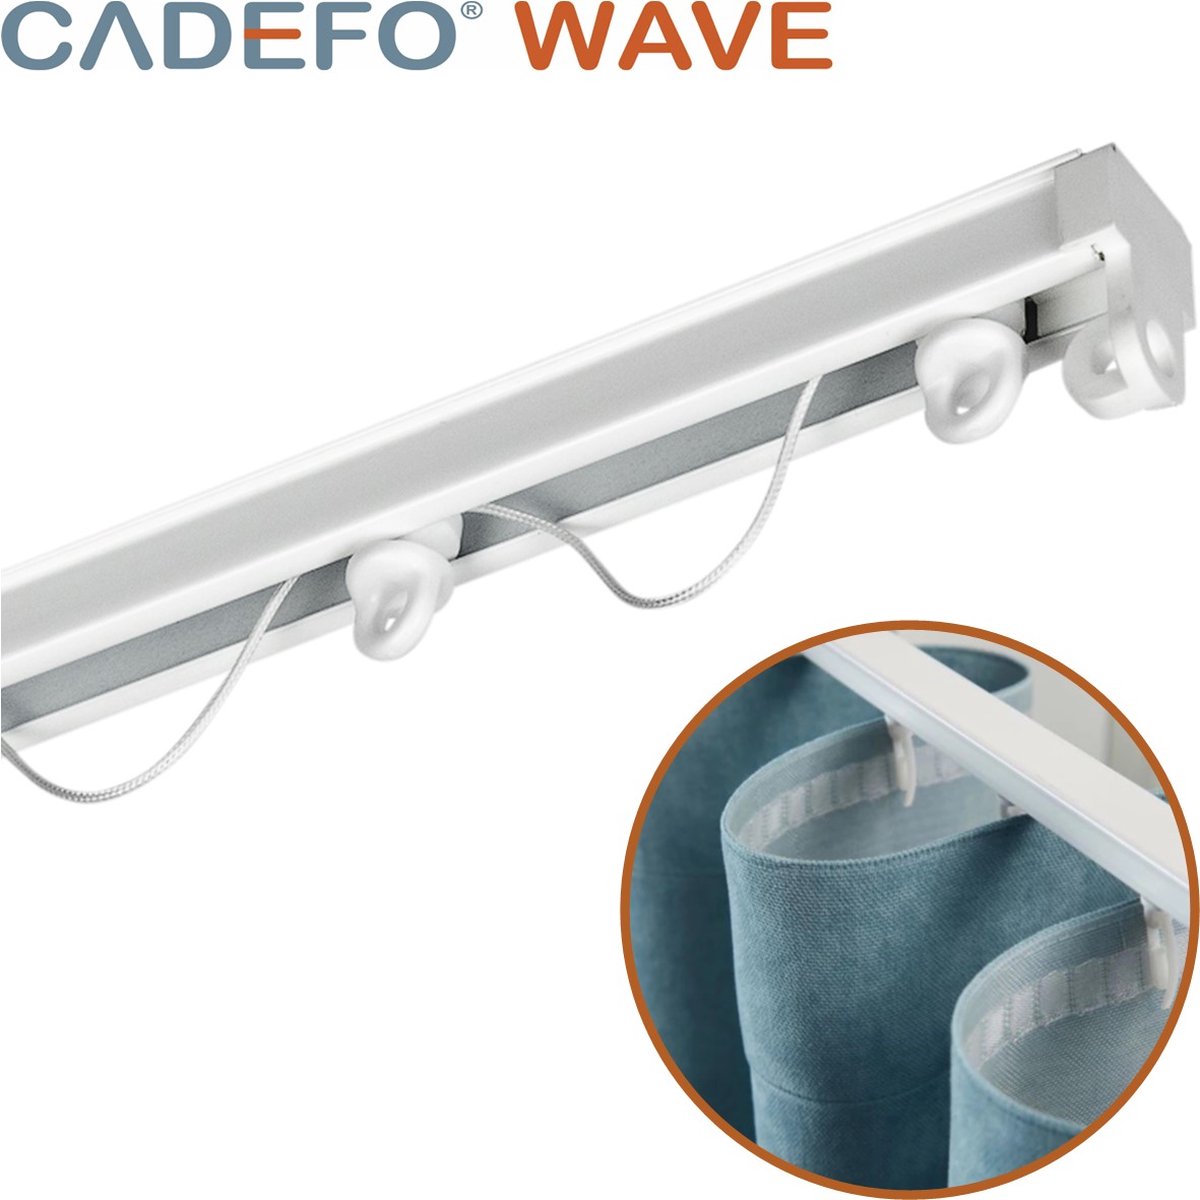 CADEFO WAVE (301 - 350 cm) Gordijnrails - Compleet op maat! - UIT 1 STUK - Leverbaar tot 6 meter - Plafondbevestiging - Lengte 319 cm